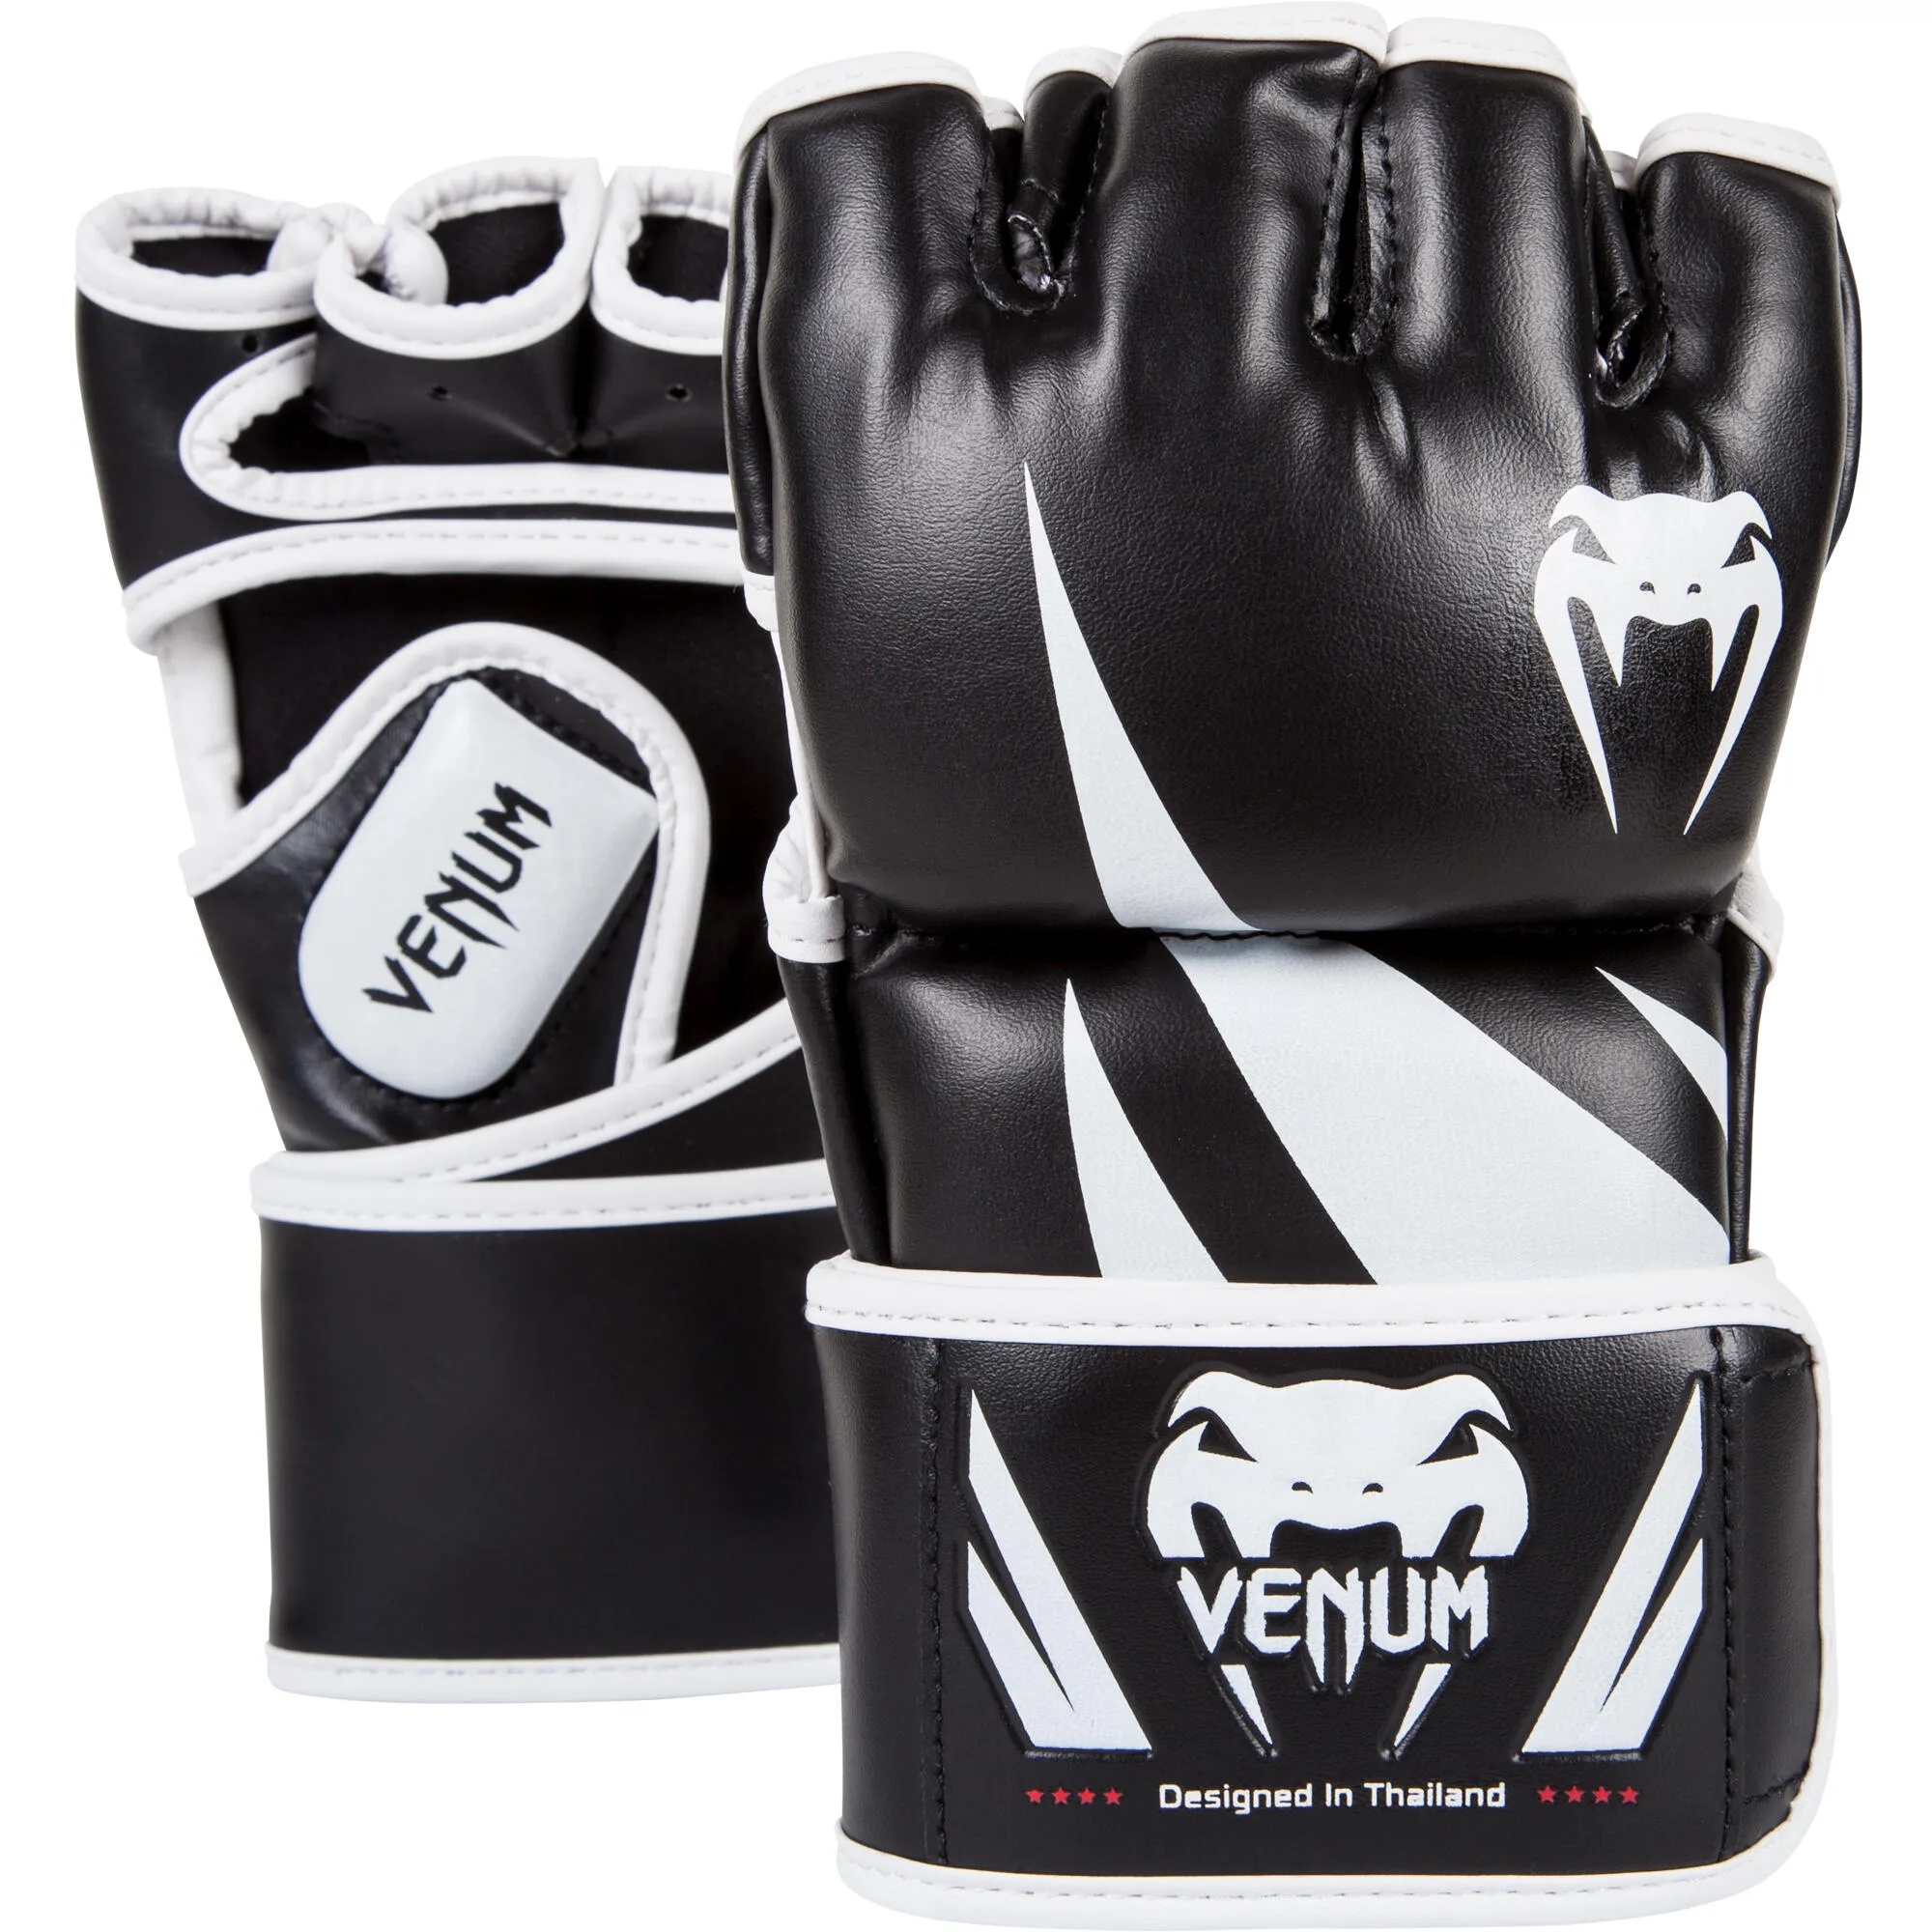 MMA Handschuhe Trainingshandschuhe Venum Challenger weiss/schwarz, schwarz|weiß, M